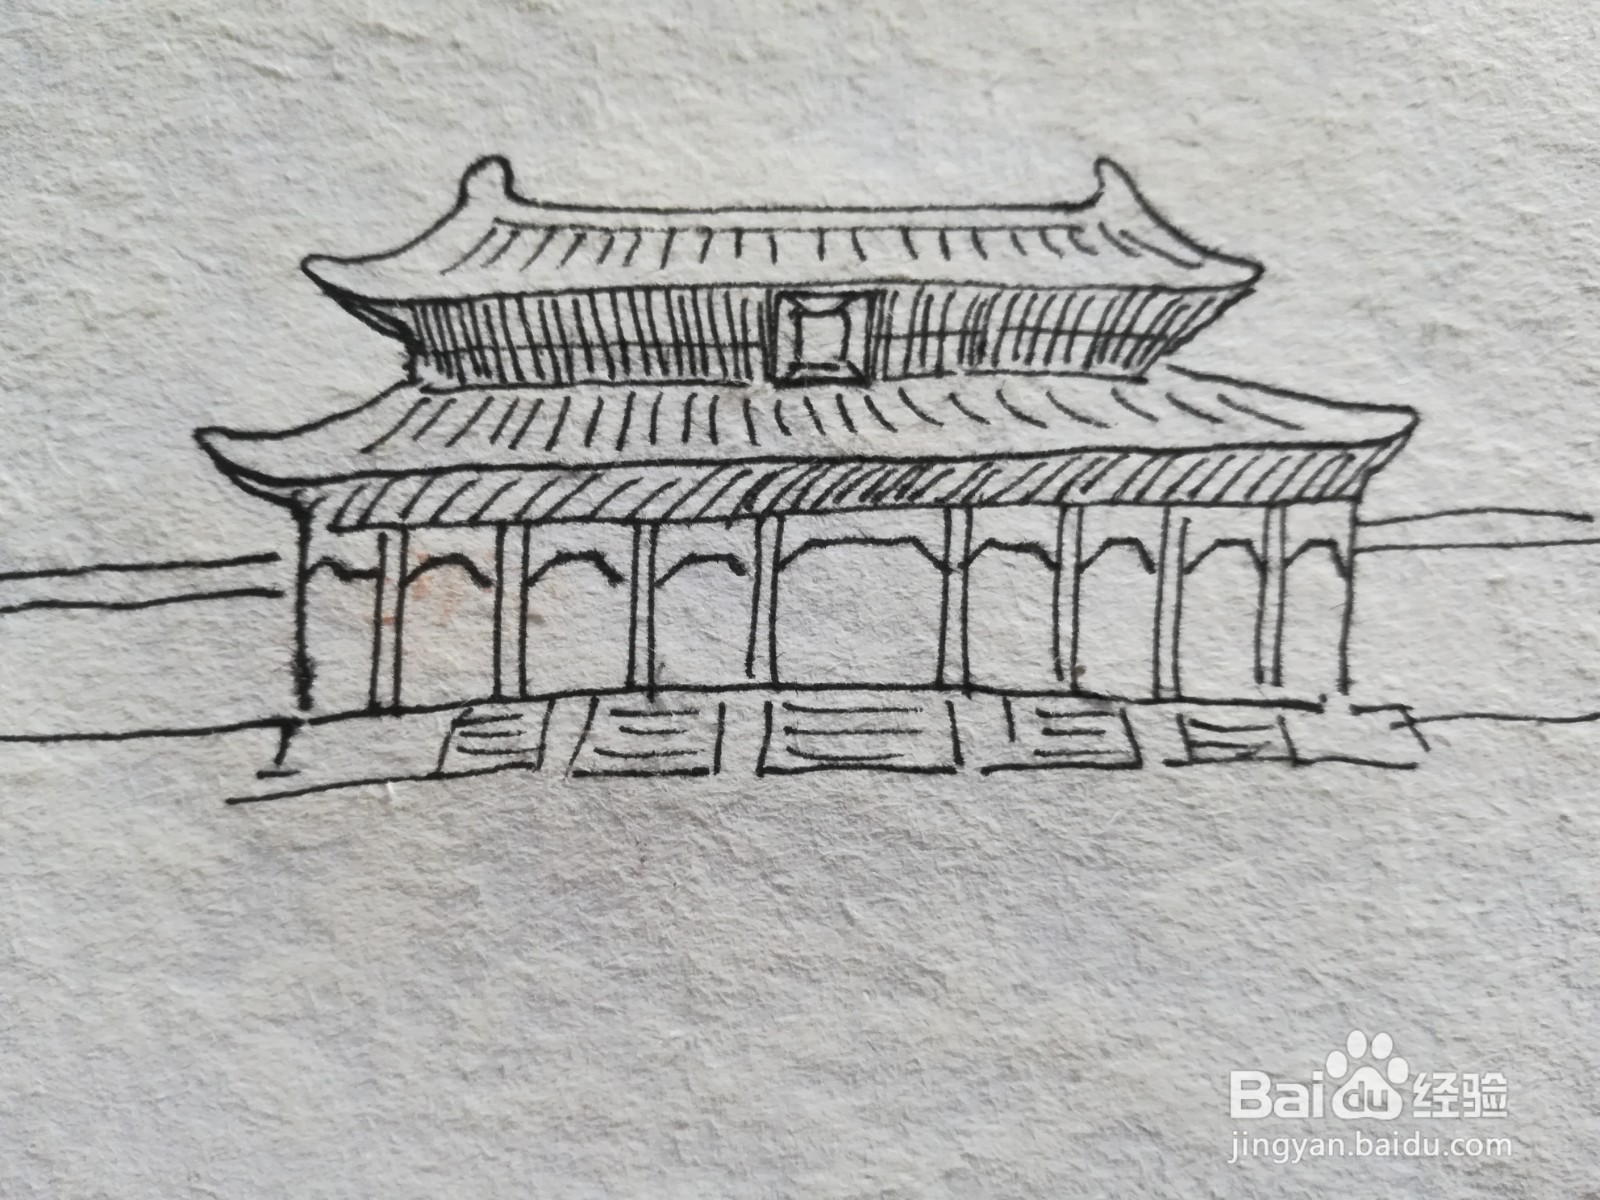 唐朝皇宫简笔画图片